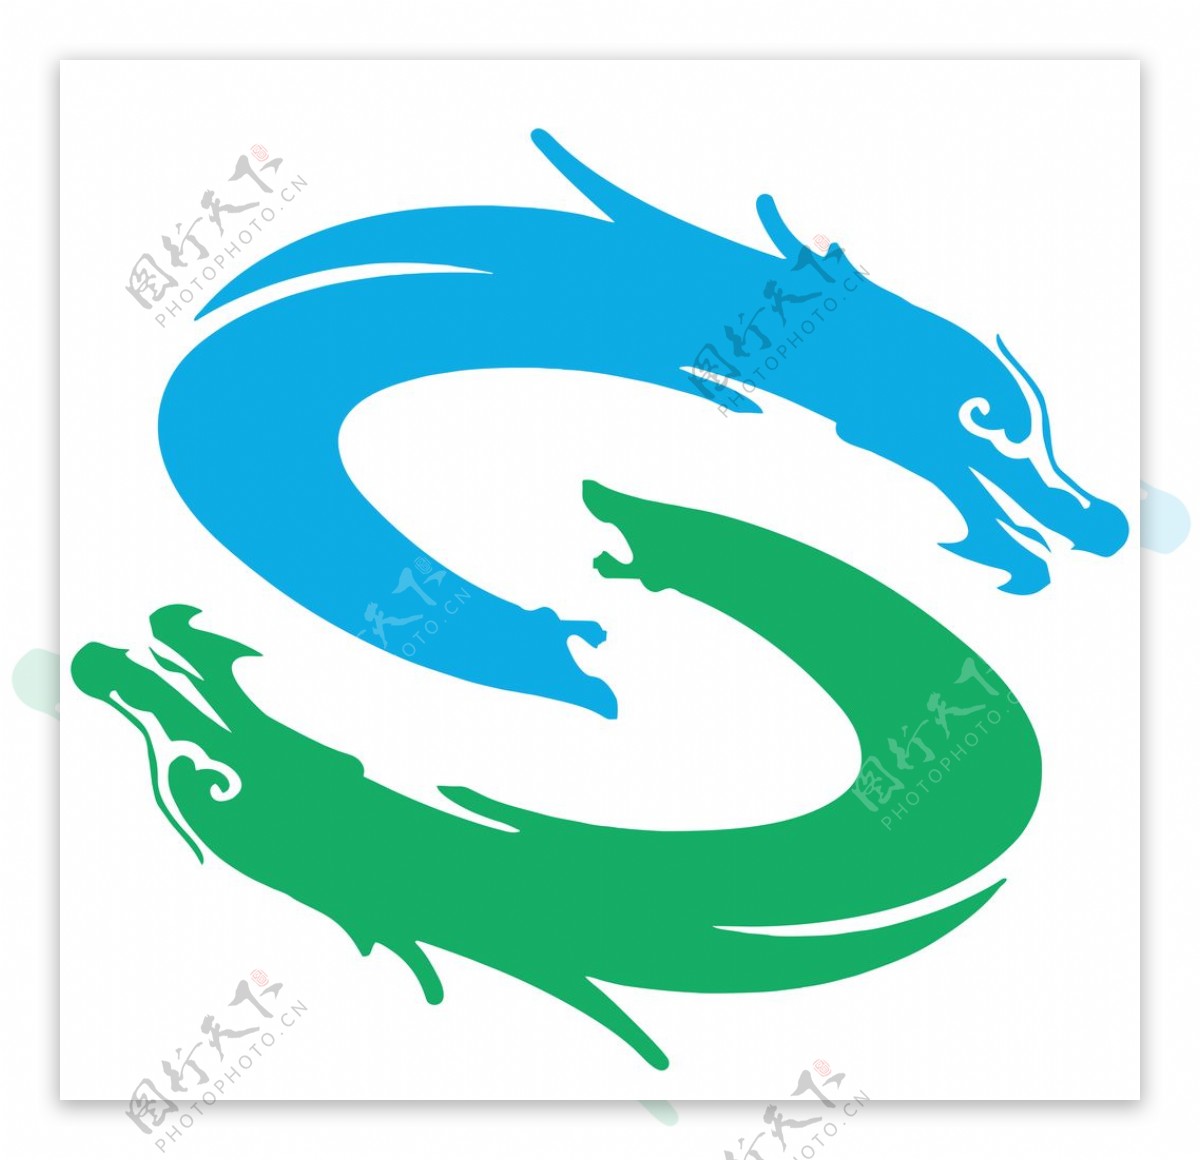 北京首航蓝天集团logo